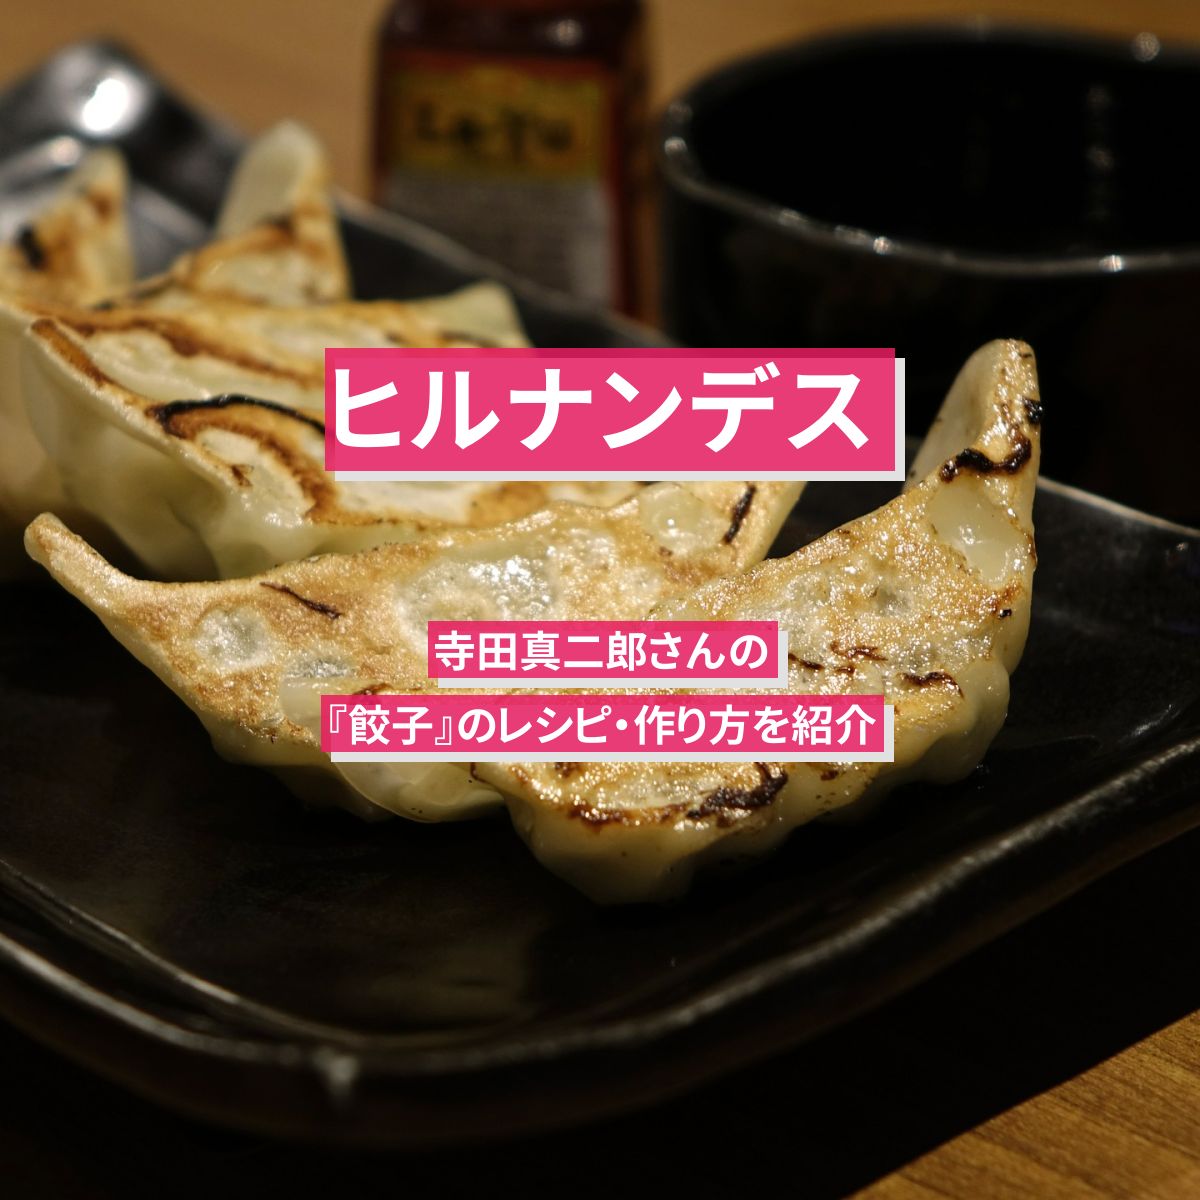 【ヒルナンデス】『餃子』味付けはオイスターソースのみの寺田真二郎のレシピ・作り方を紹介